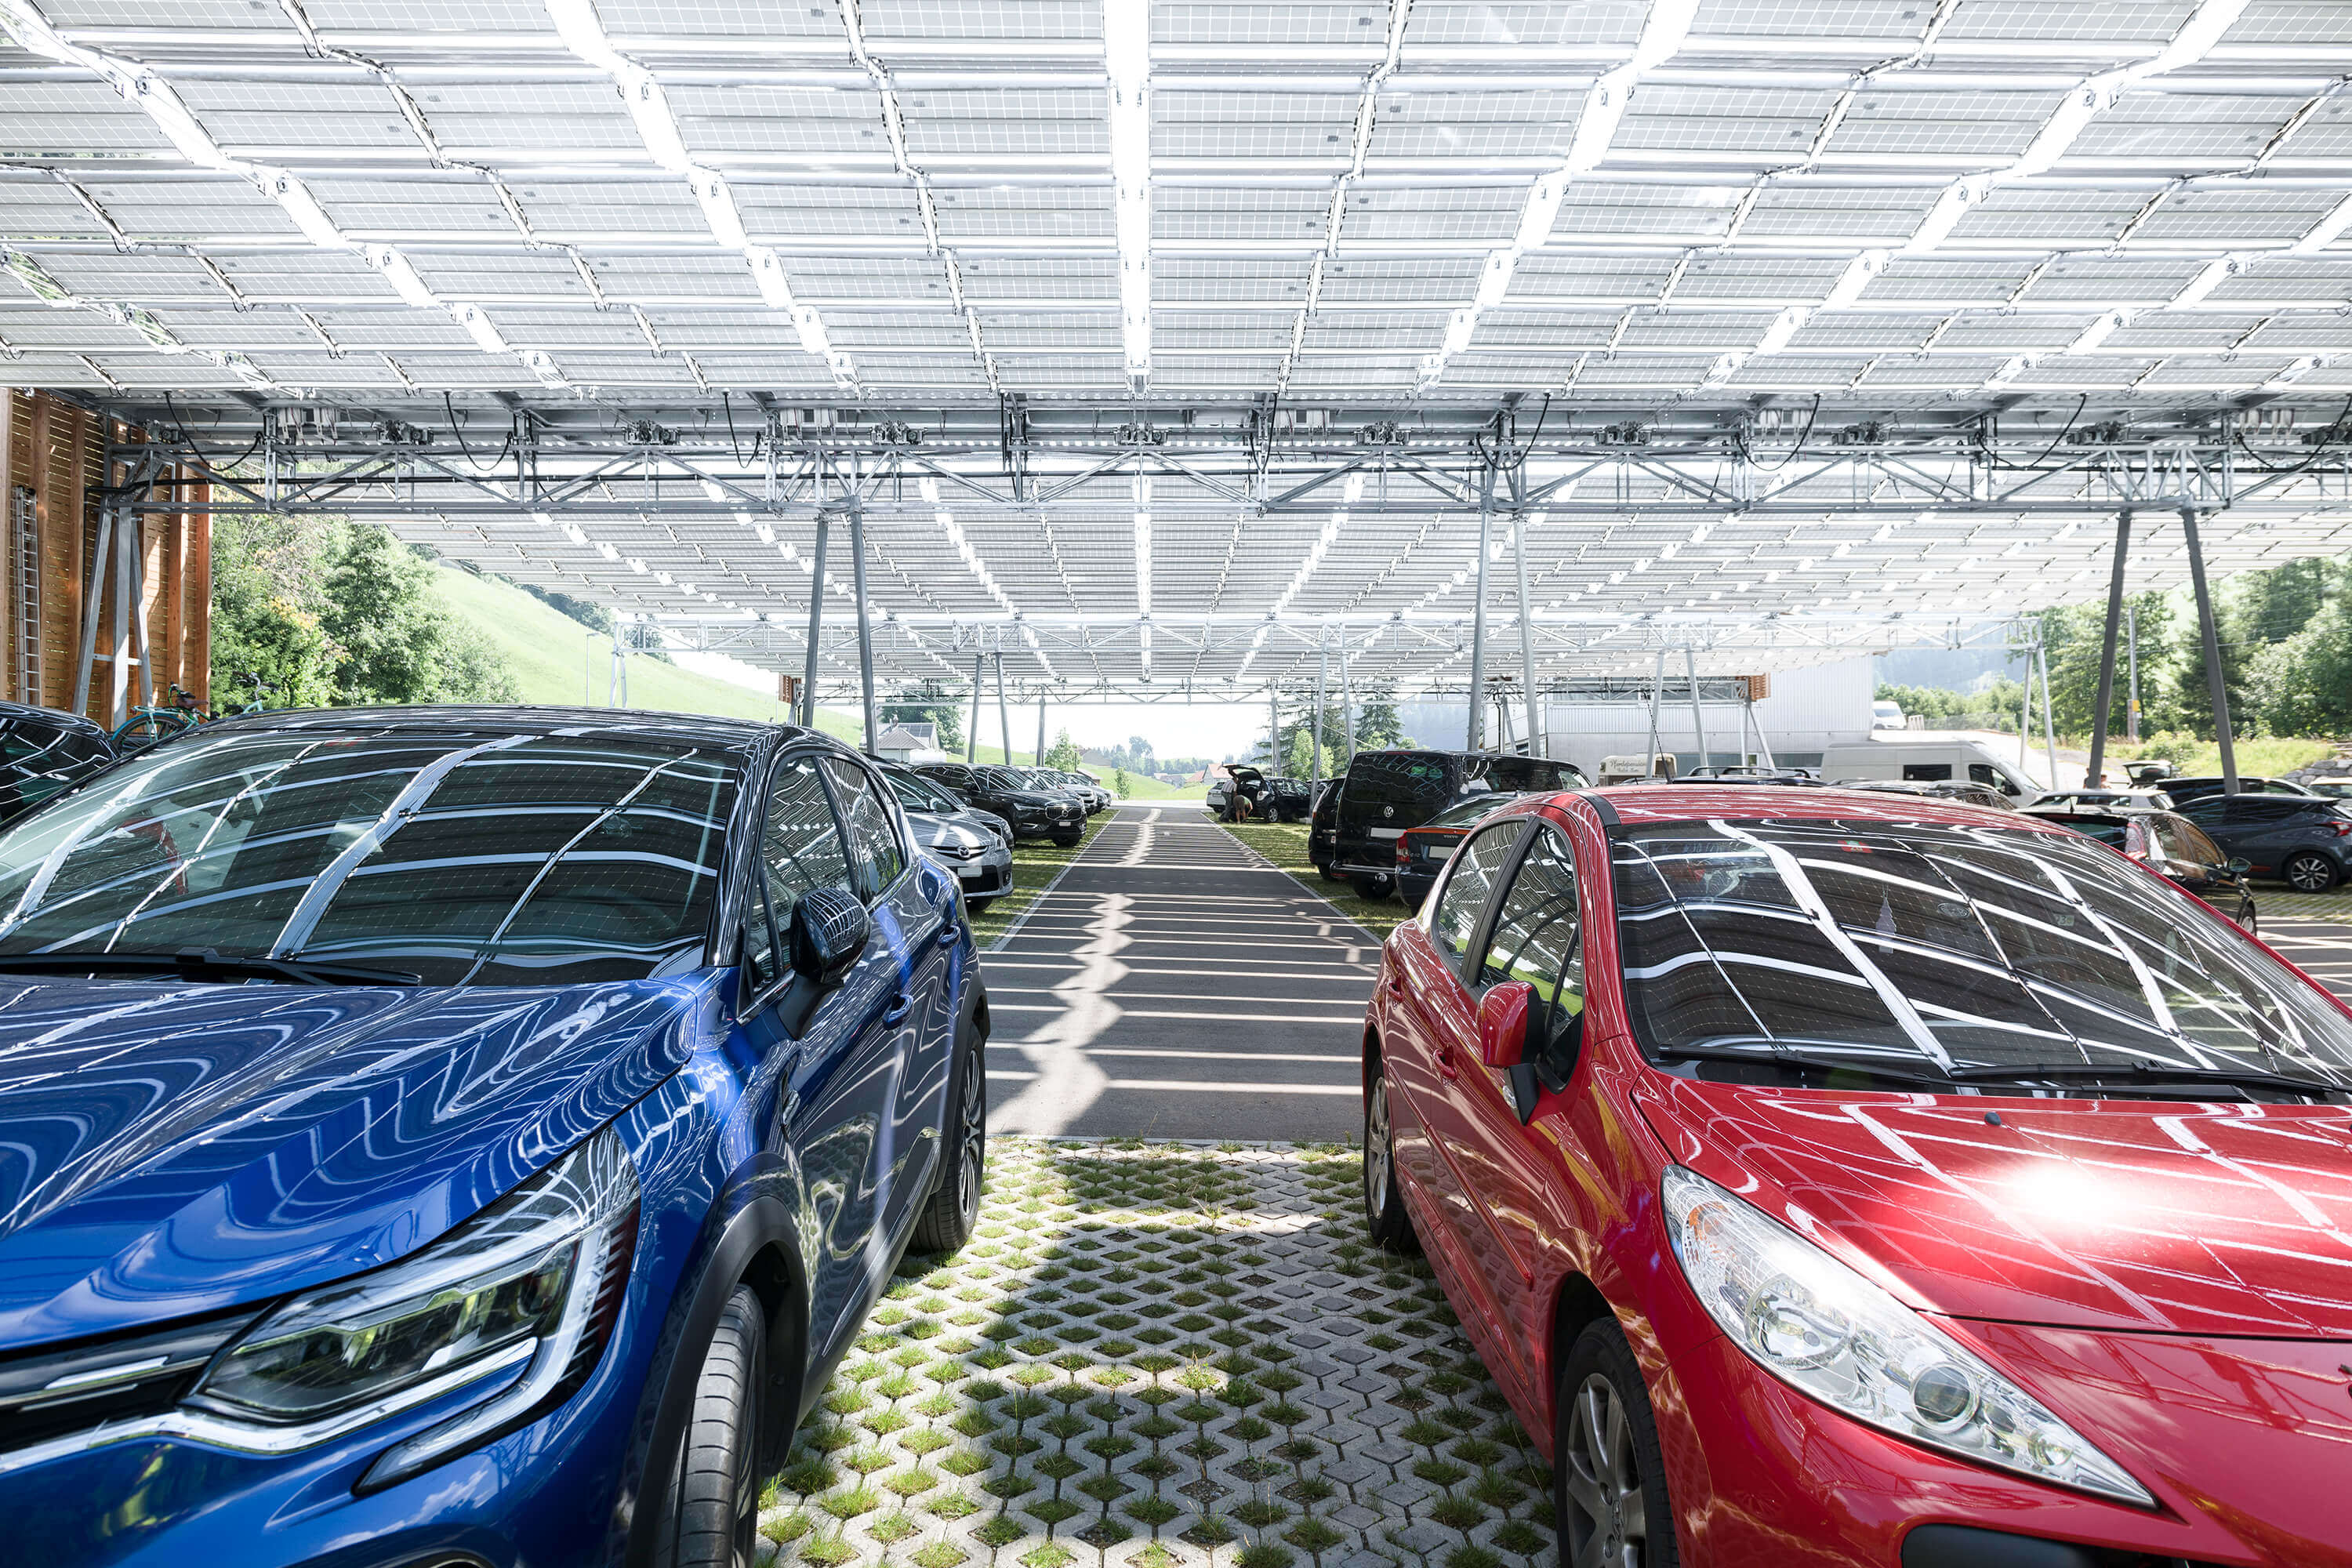 Solar power for car parks